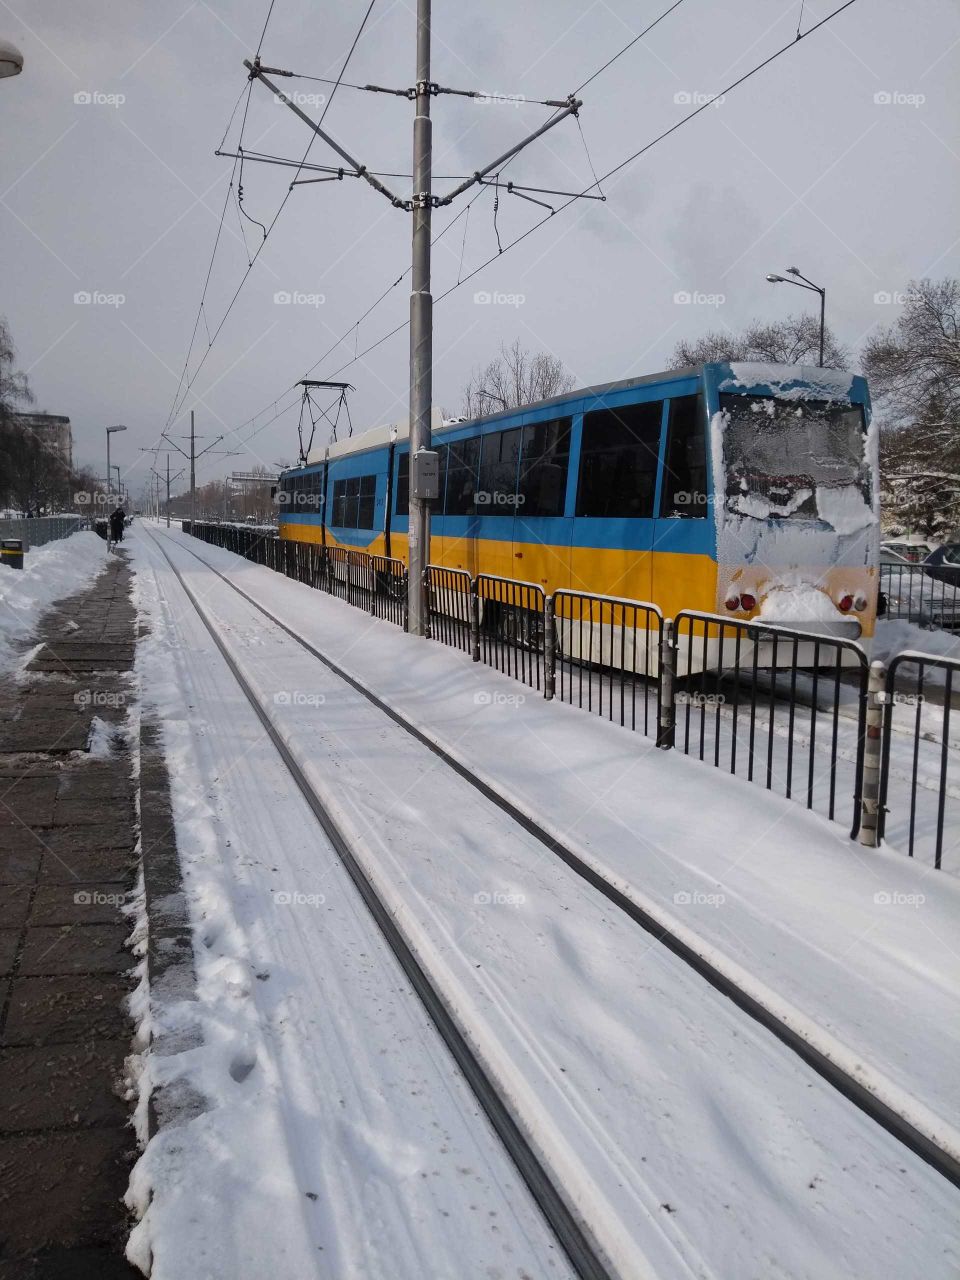 Tram Sofia winter